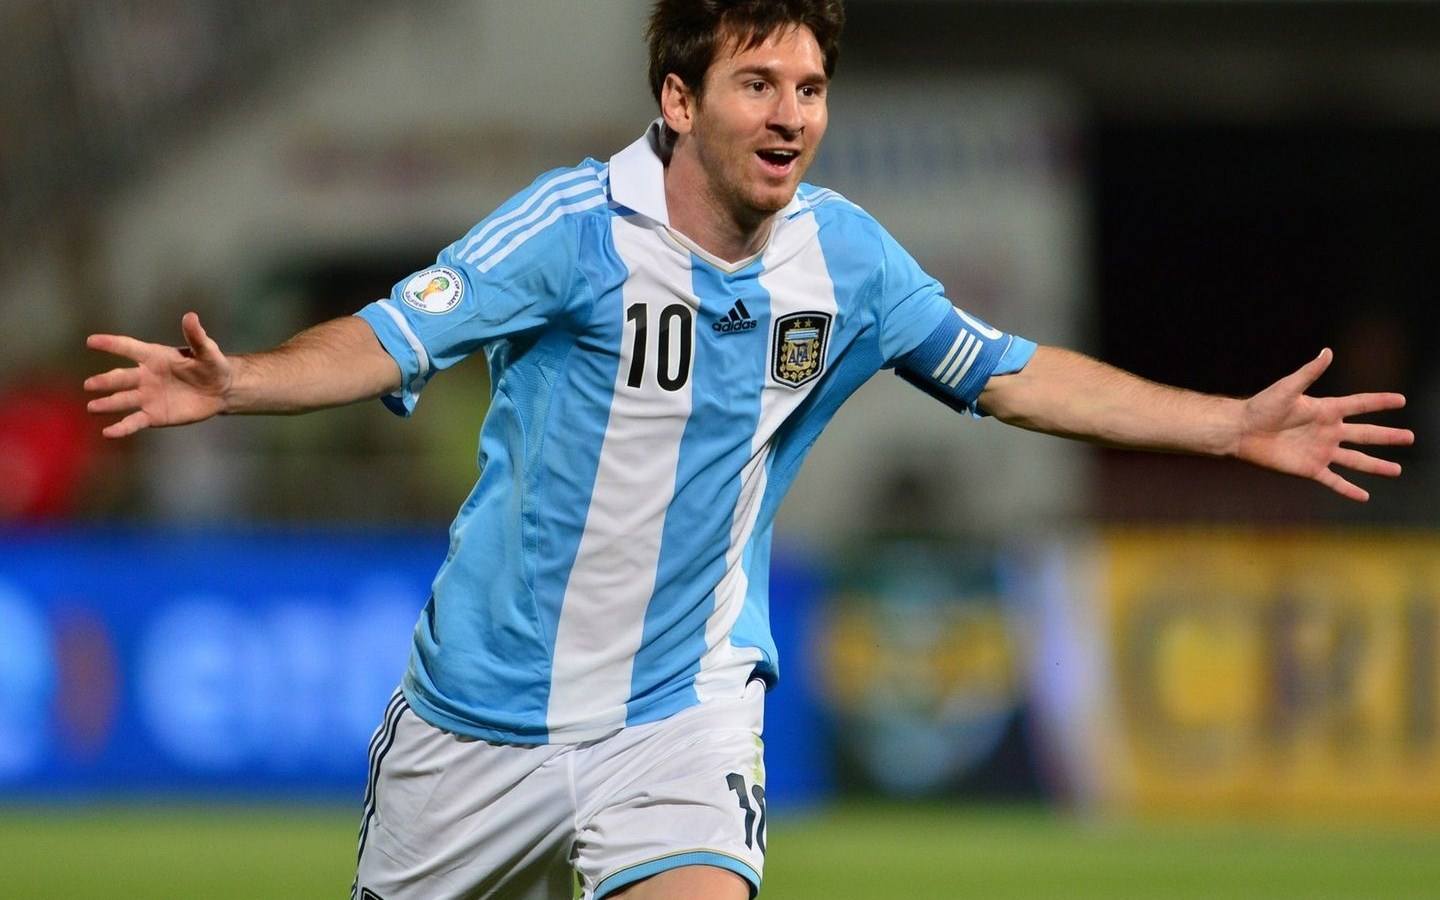 克洛普:世界杯决赛骚乱必须查明真相给球迷一个交代阿根廷国家